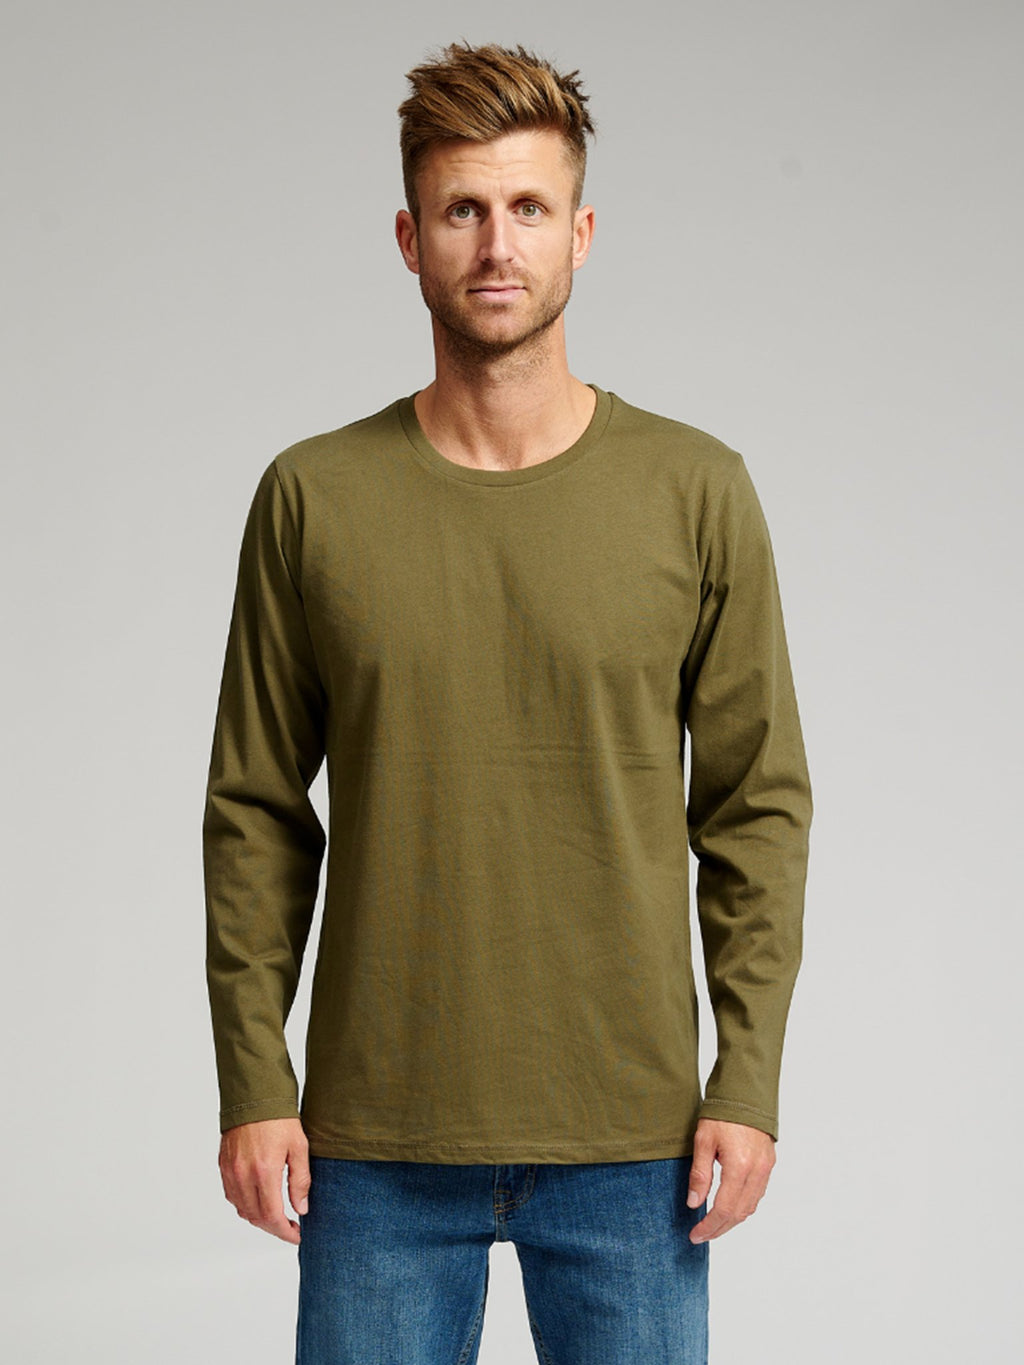 Basic Long Sleeve T -Shirt - Paketgeschäft (6 Stcs.)